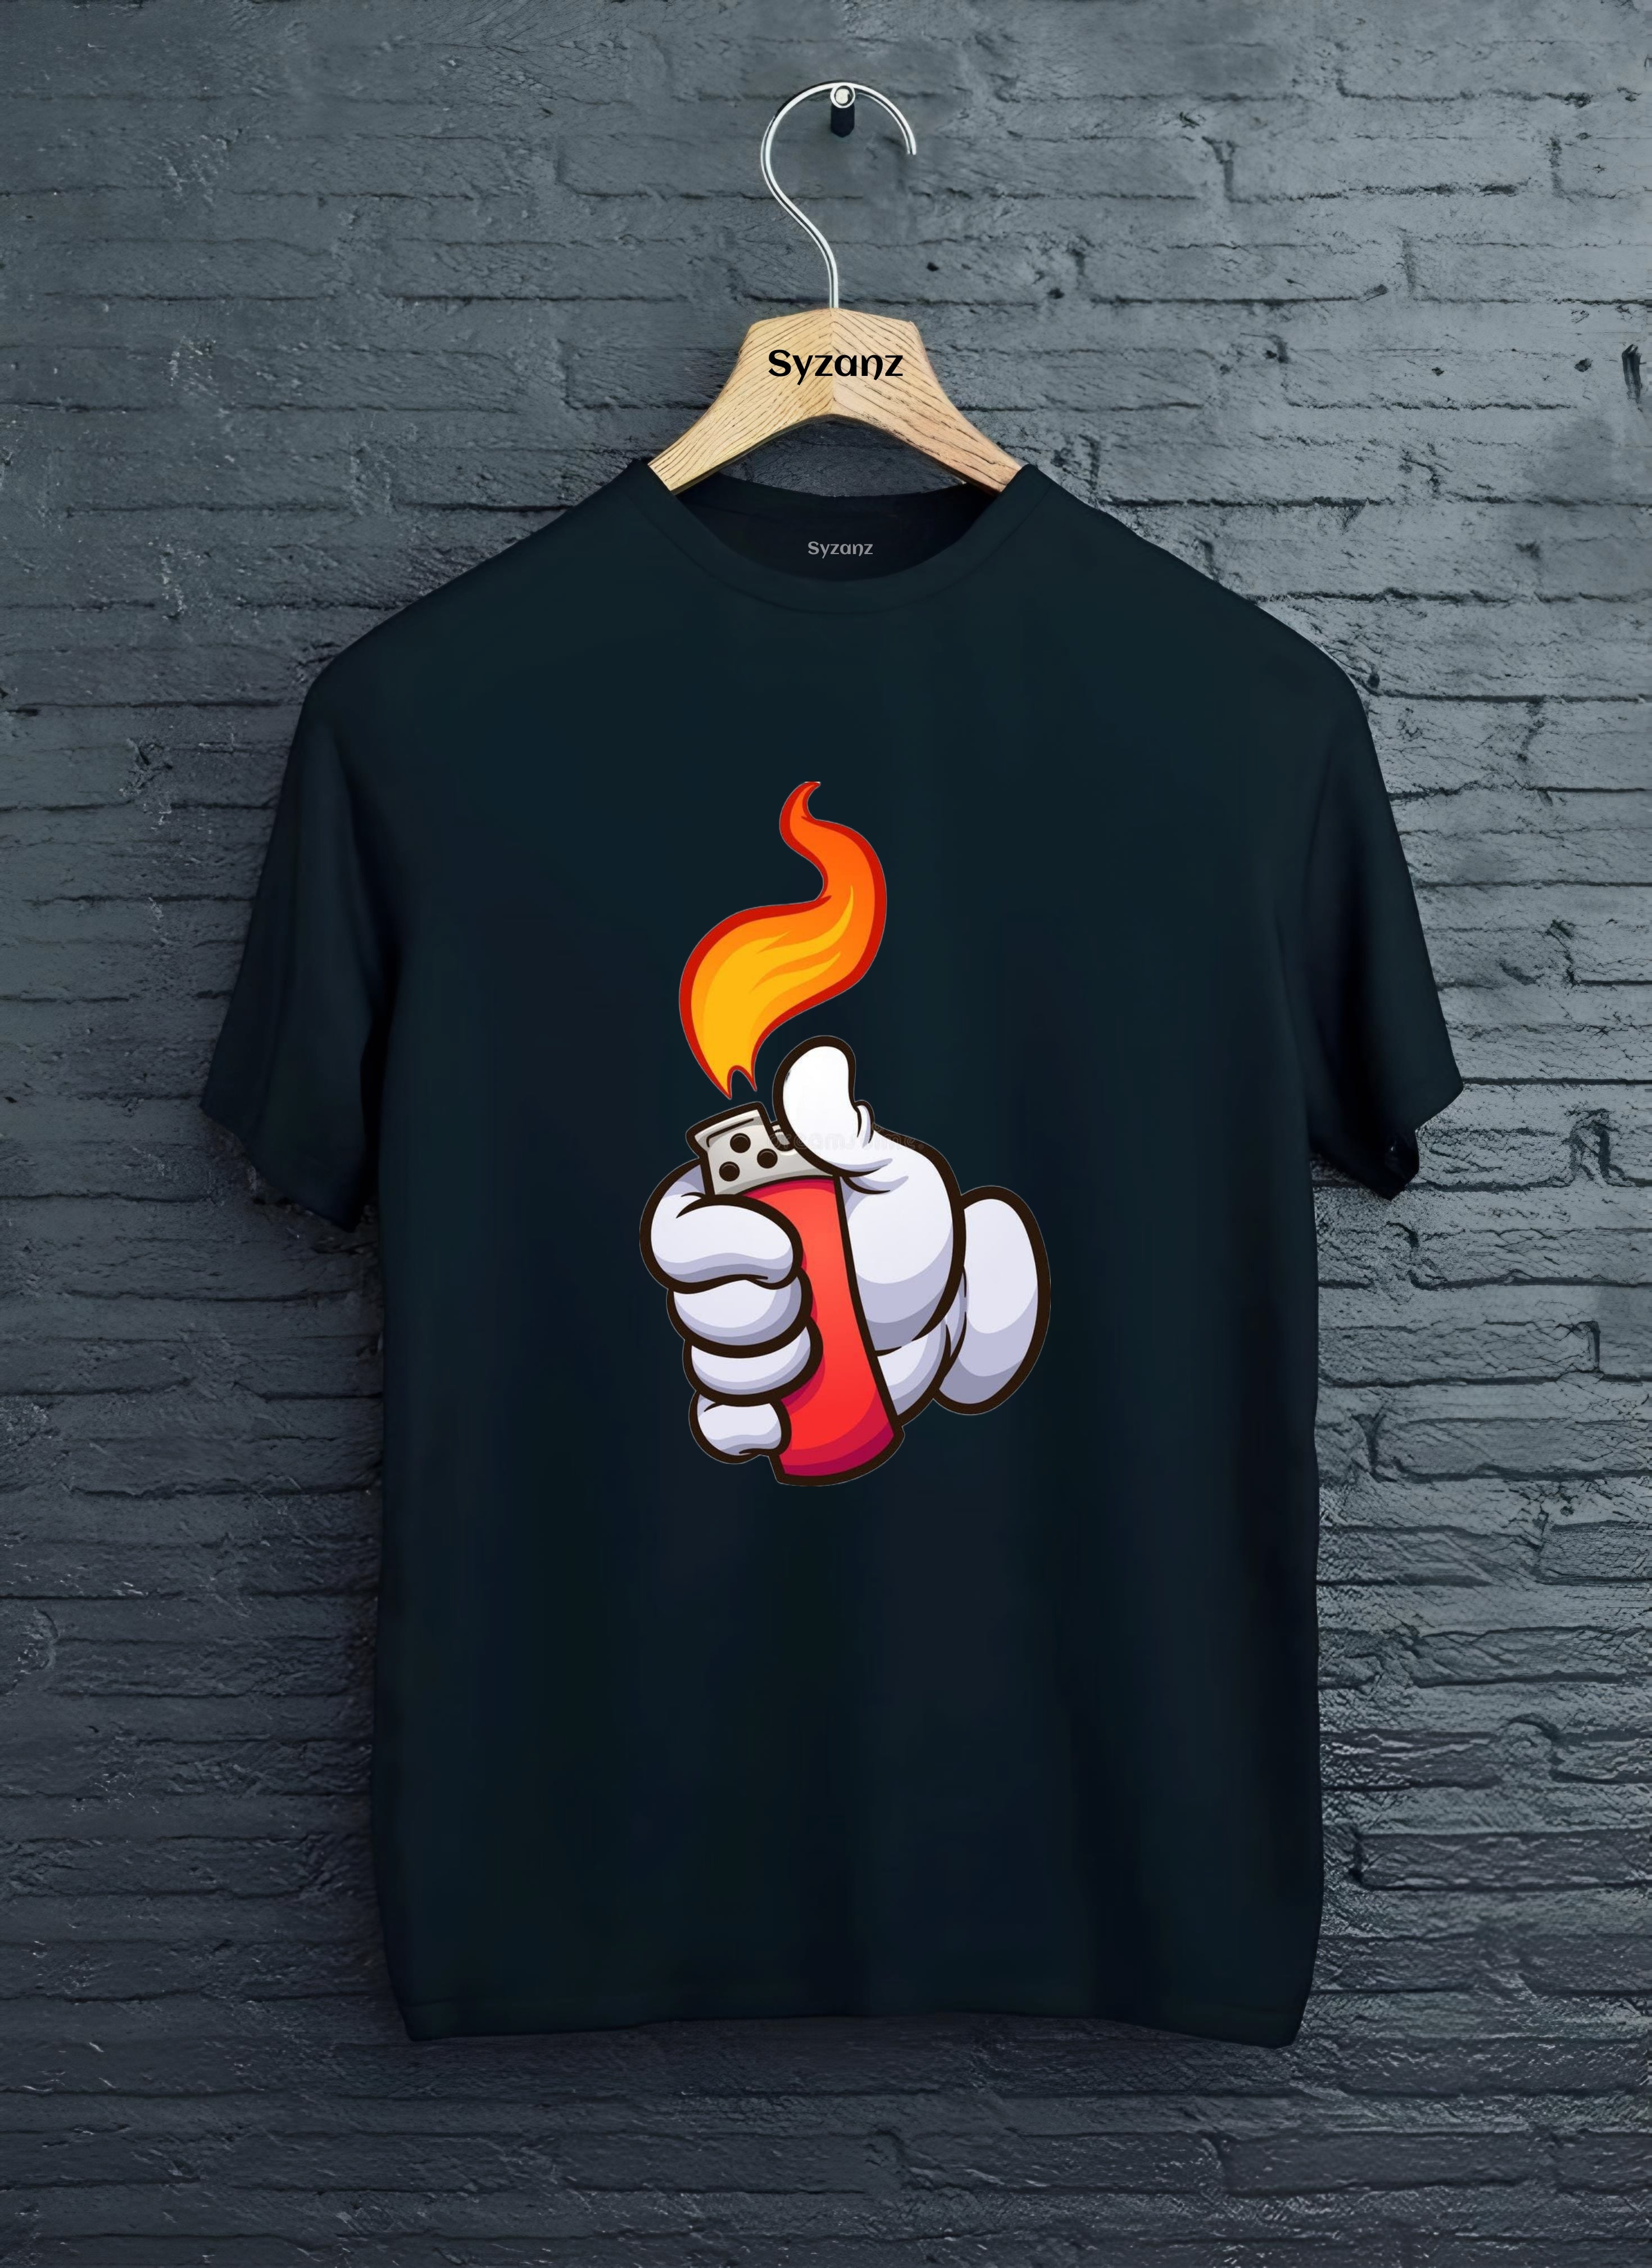 Flame graphic tshirt